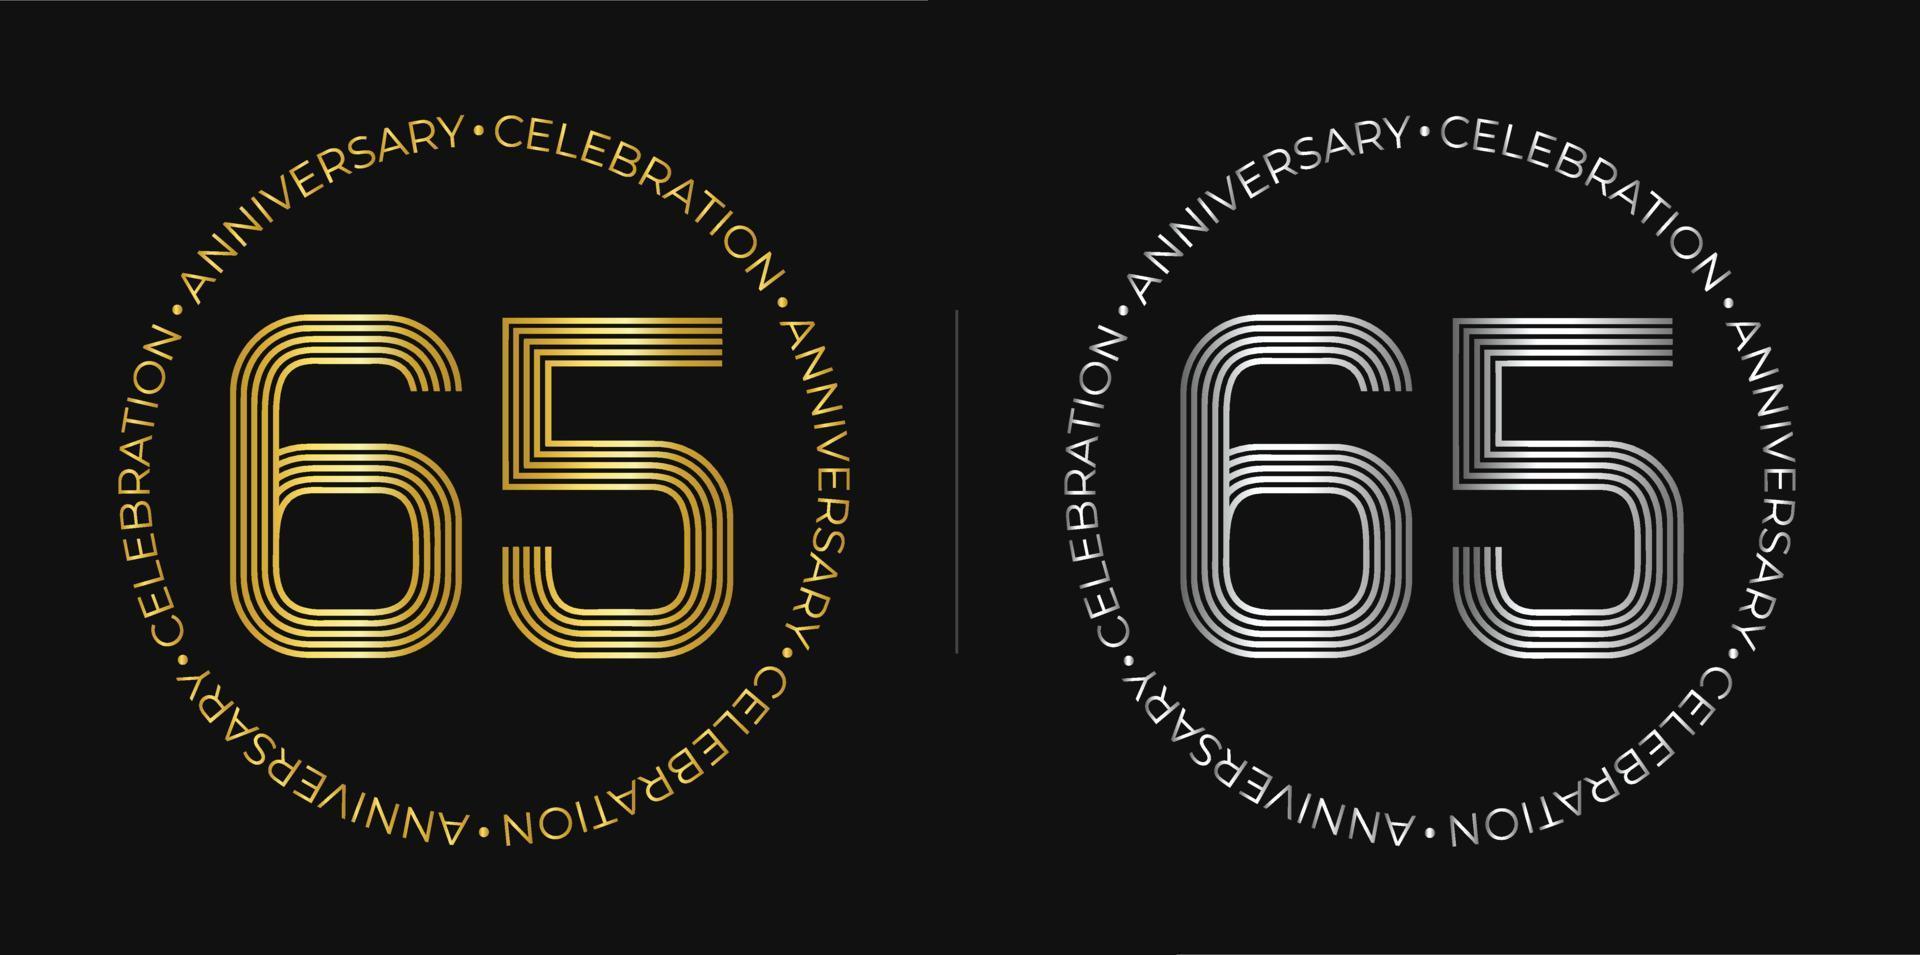 65 cumpleaños. Banner de celebración de aniversario de sesenta y cinco años en colores dorado y plateado. logo circular con diseño de números originales en líneas elegantes. vector